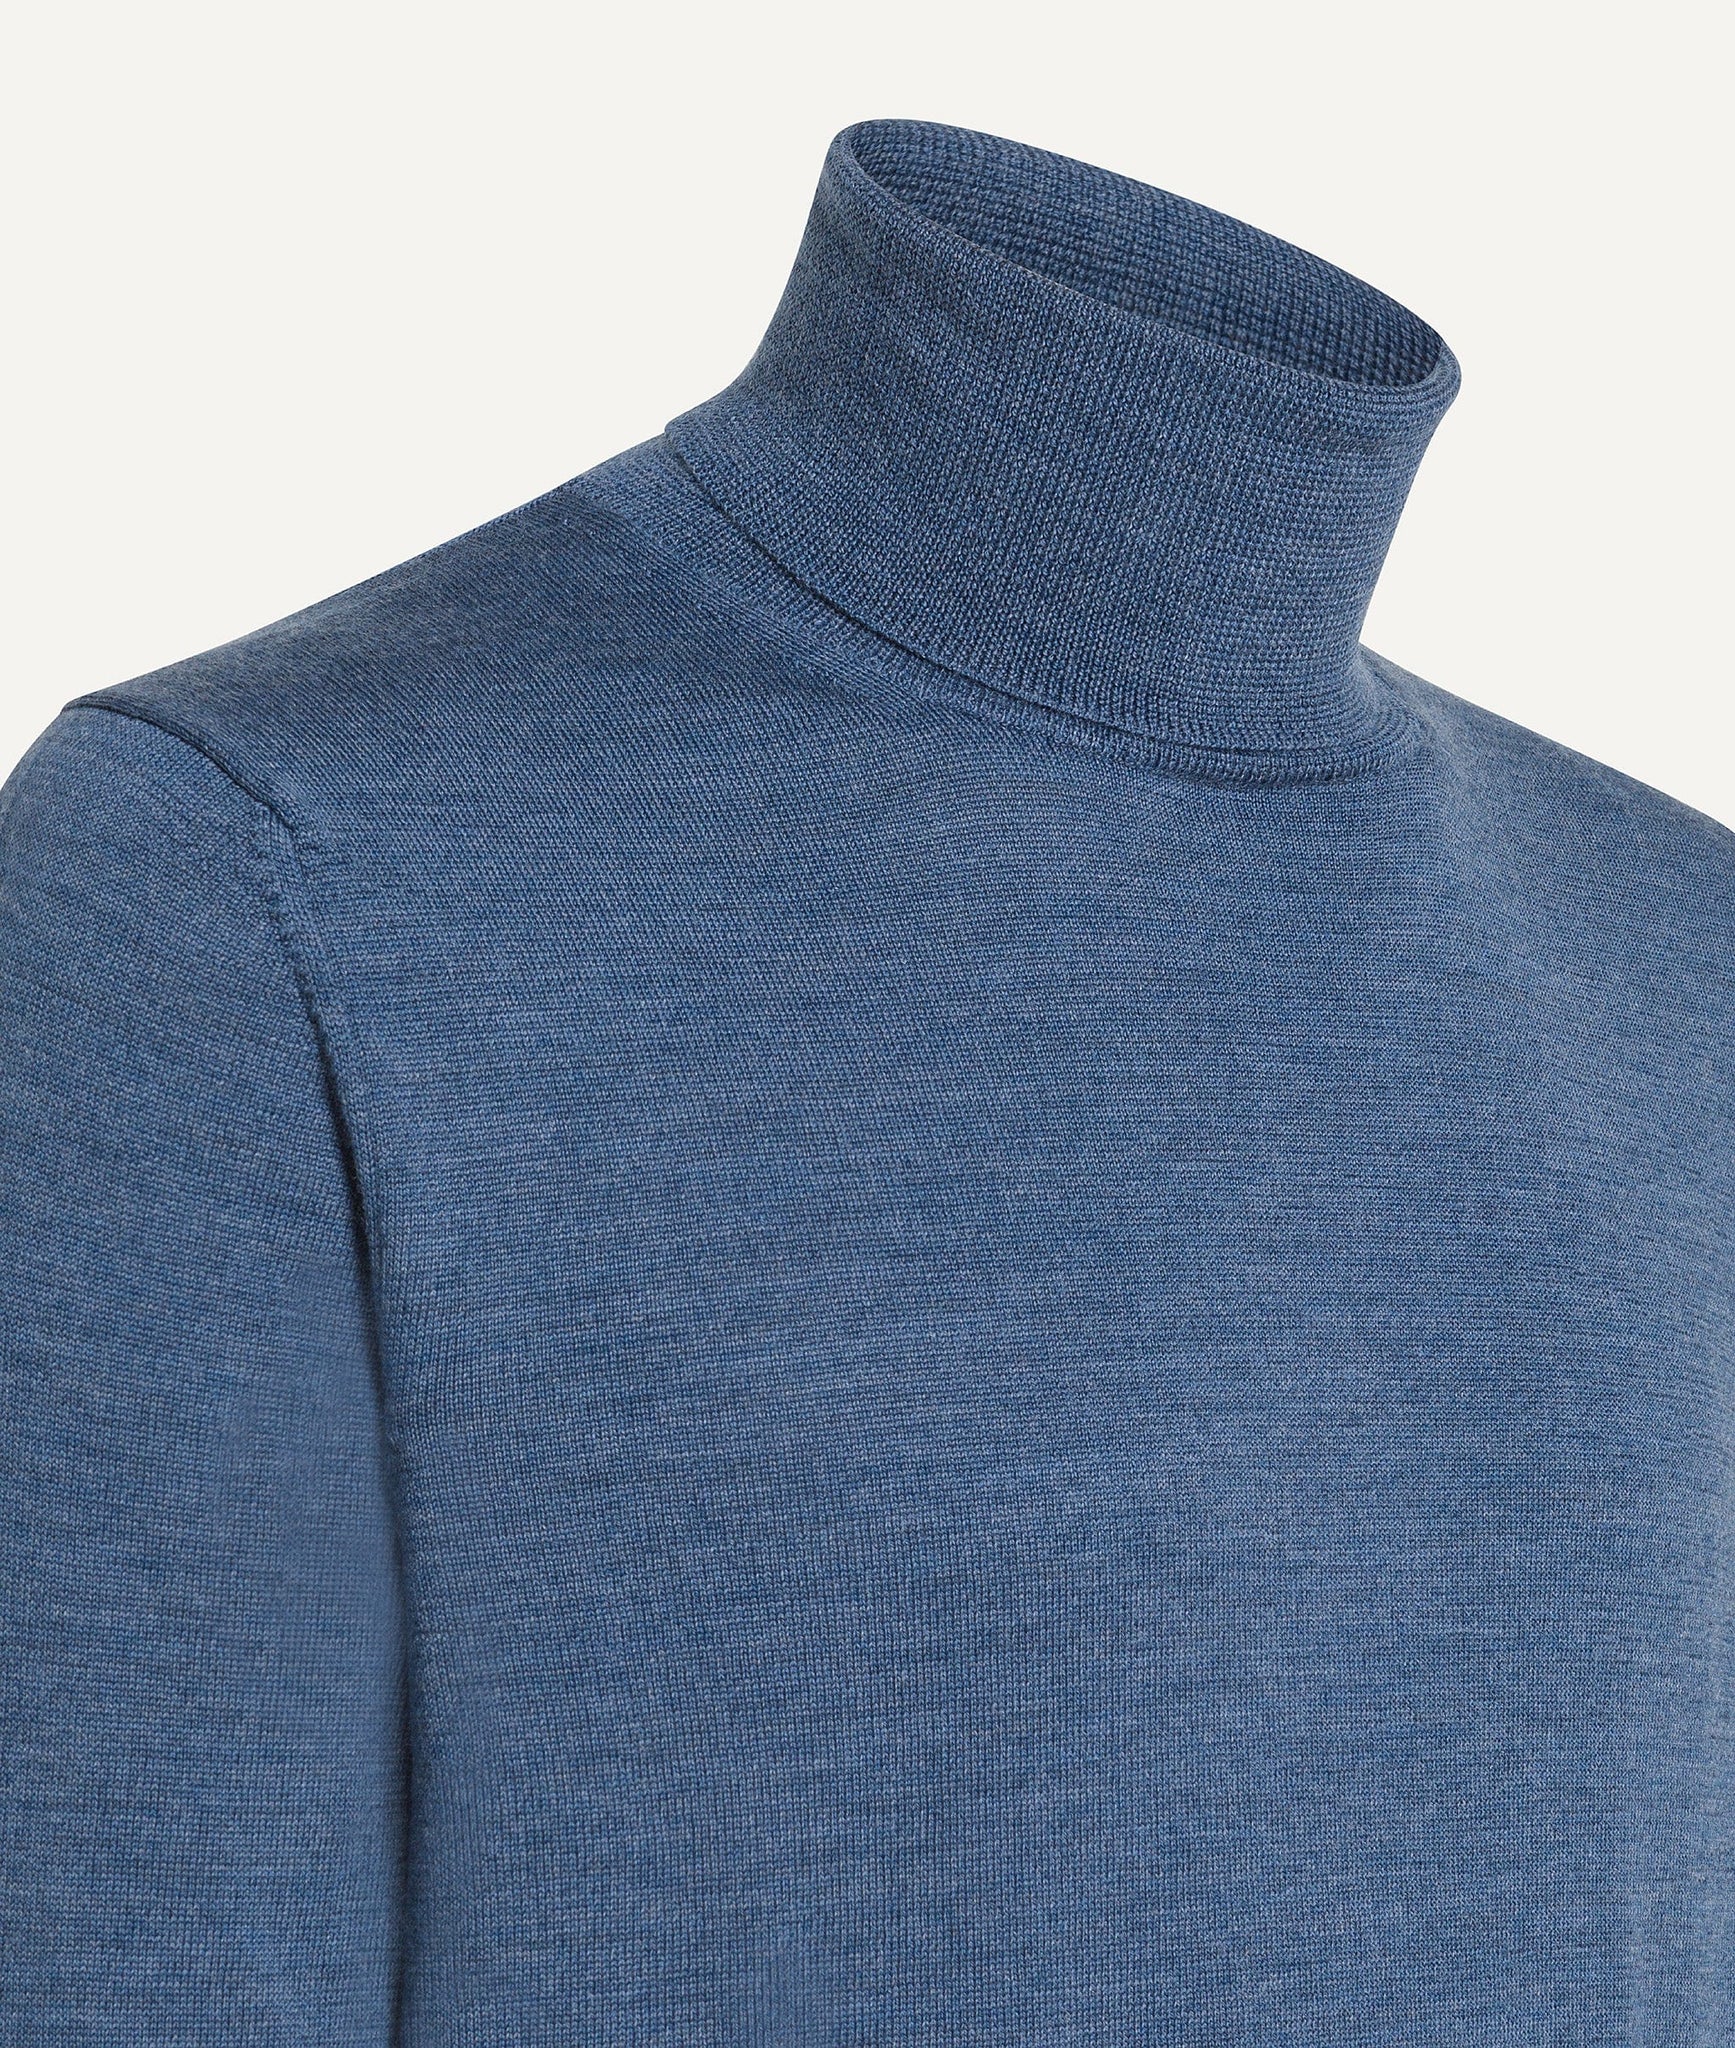 Roll Neck Sweater in Merino Wool